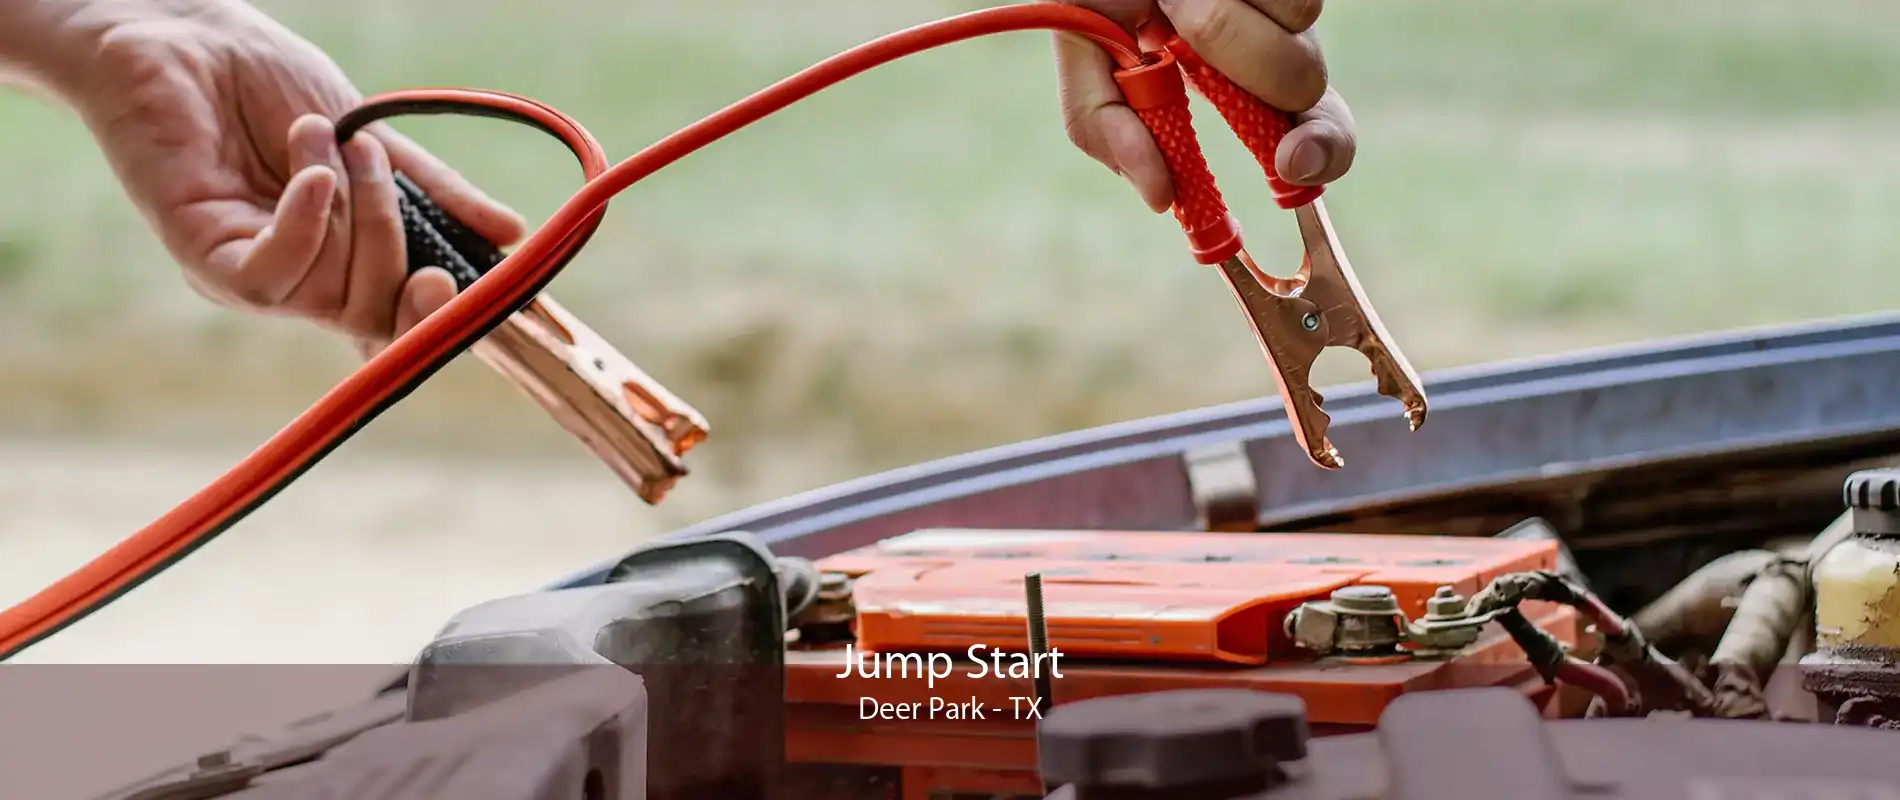 Jump Start Deer Park - TX